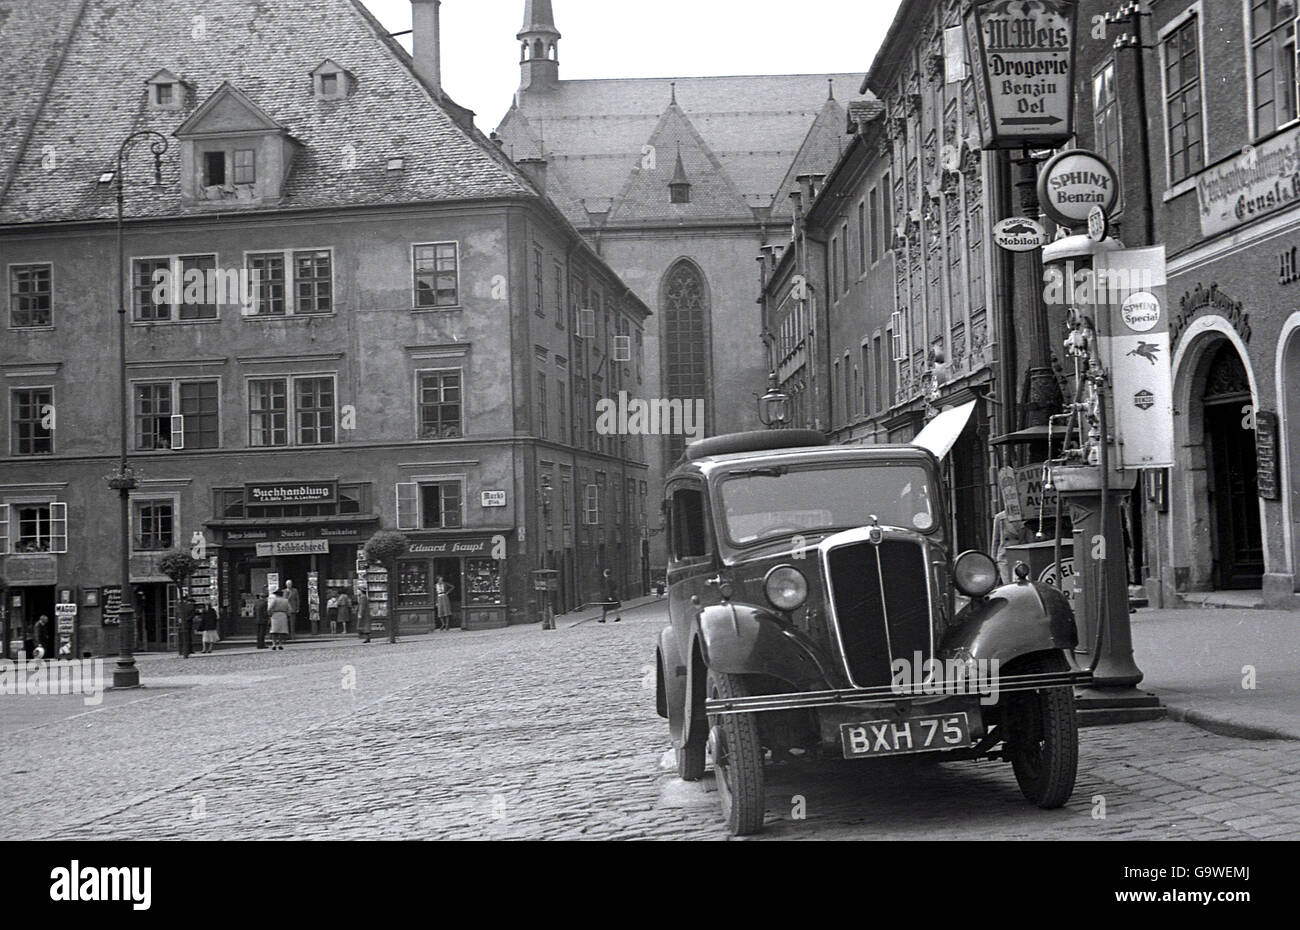 1930er Jahre, historisches Bild eines Autos mit einem britischen Nummernschild, das an einer Straßentankpumpe auf dem asphaltierten Stadtplatz von Eger im Sudetenland, in der Tschechoslowakei, geparkt wurde. Die Nähe zur deutschen Grenze war Teil eines deutschsprachigen Gebiets namens Egerland. Sie wurde 1938 von Deutschland annulliert. Stockfoto